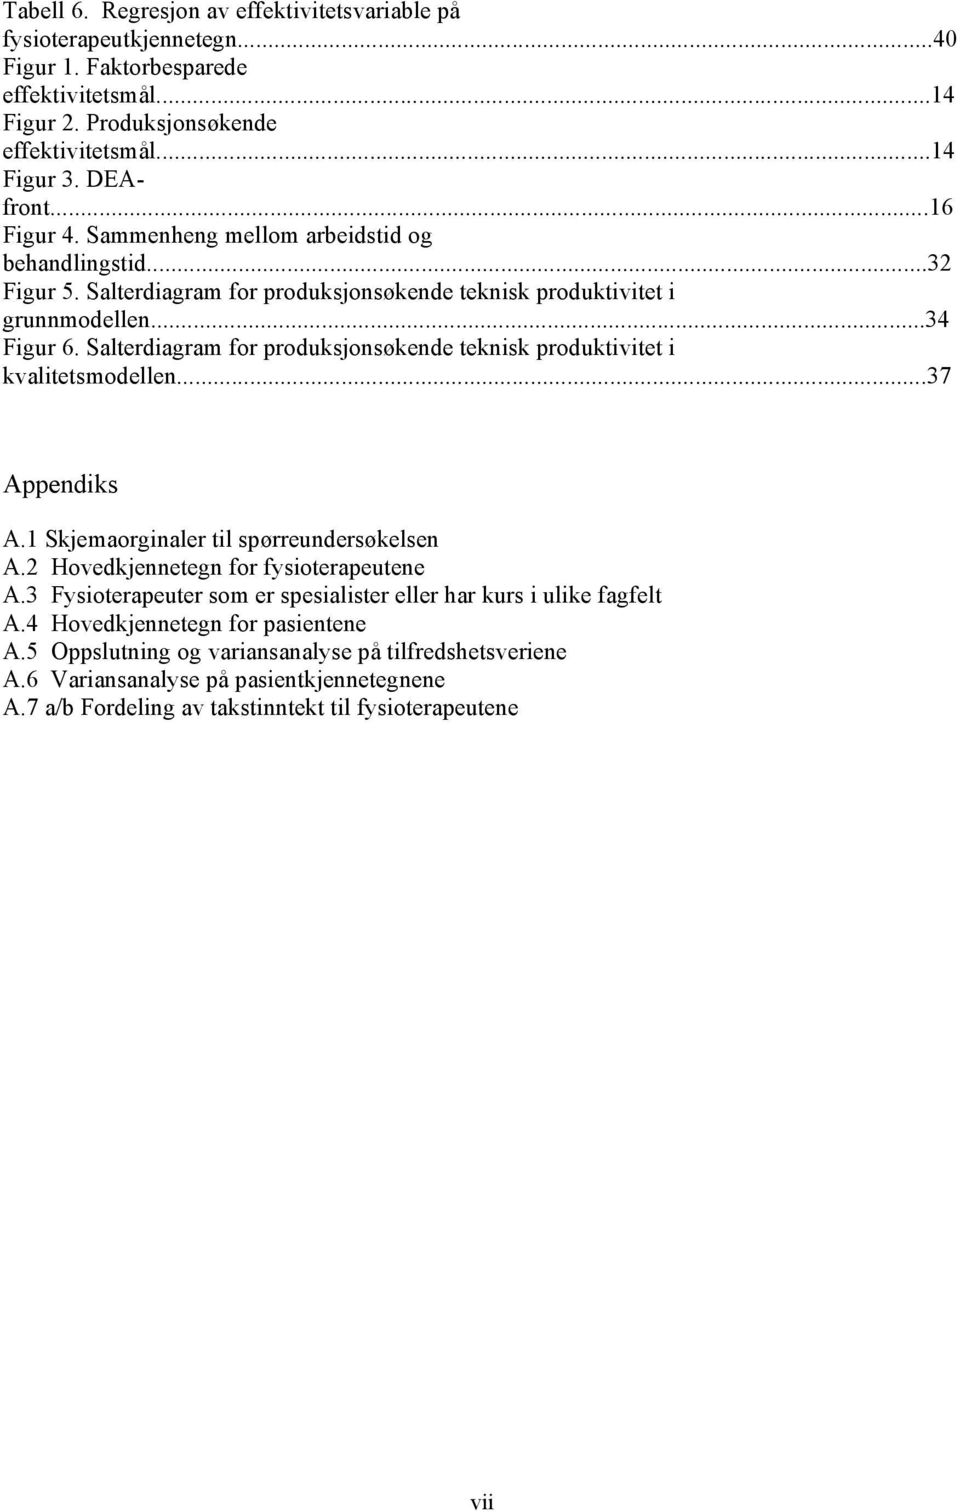 Salterdiagram for produksjonsøkende teknisk produktivitet i kvalitetsmodellen...37 Appendiks A.1 Skjemaorginaler til spørreundersøkelsen A.2 Hovedkjennetegn for fysioterapeutene A.